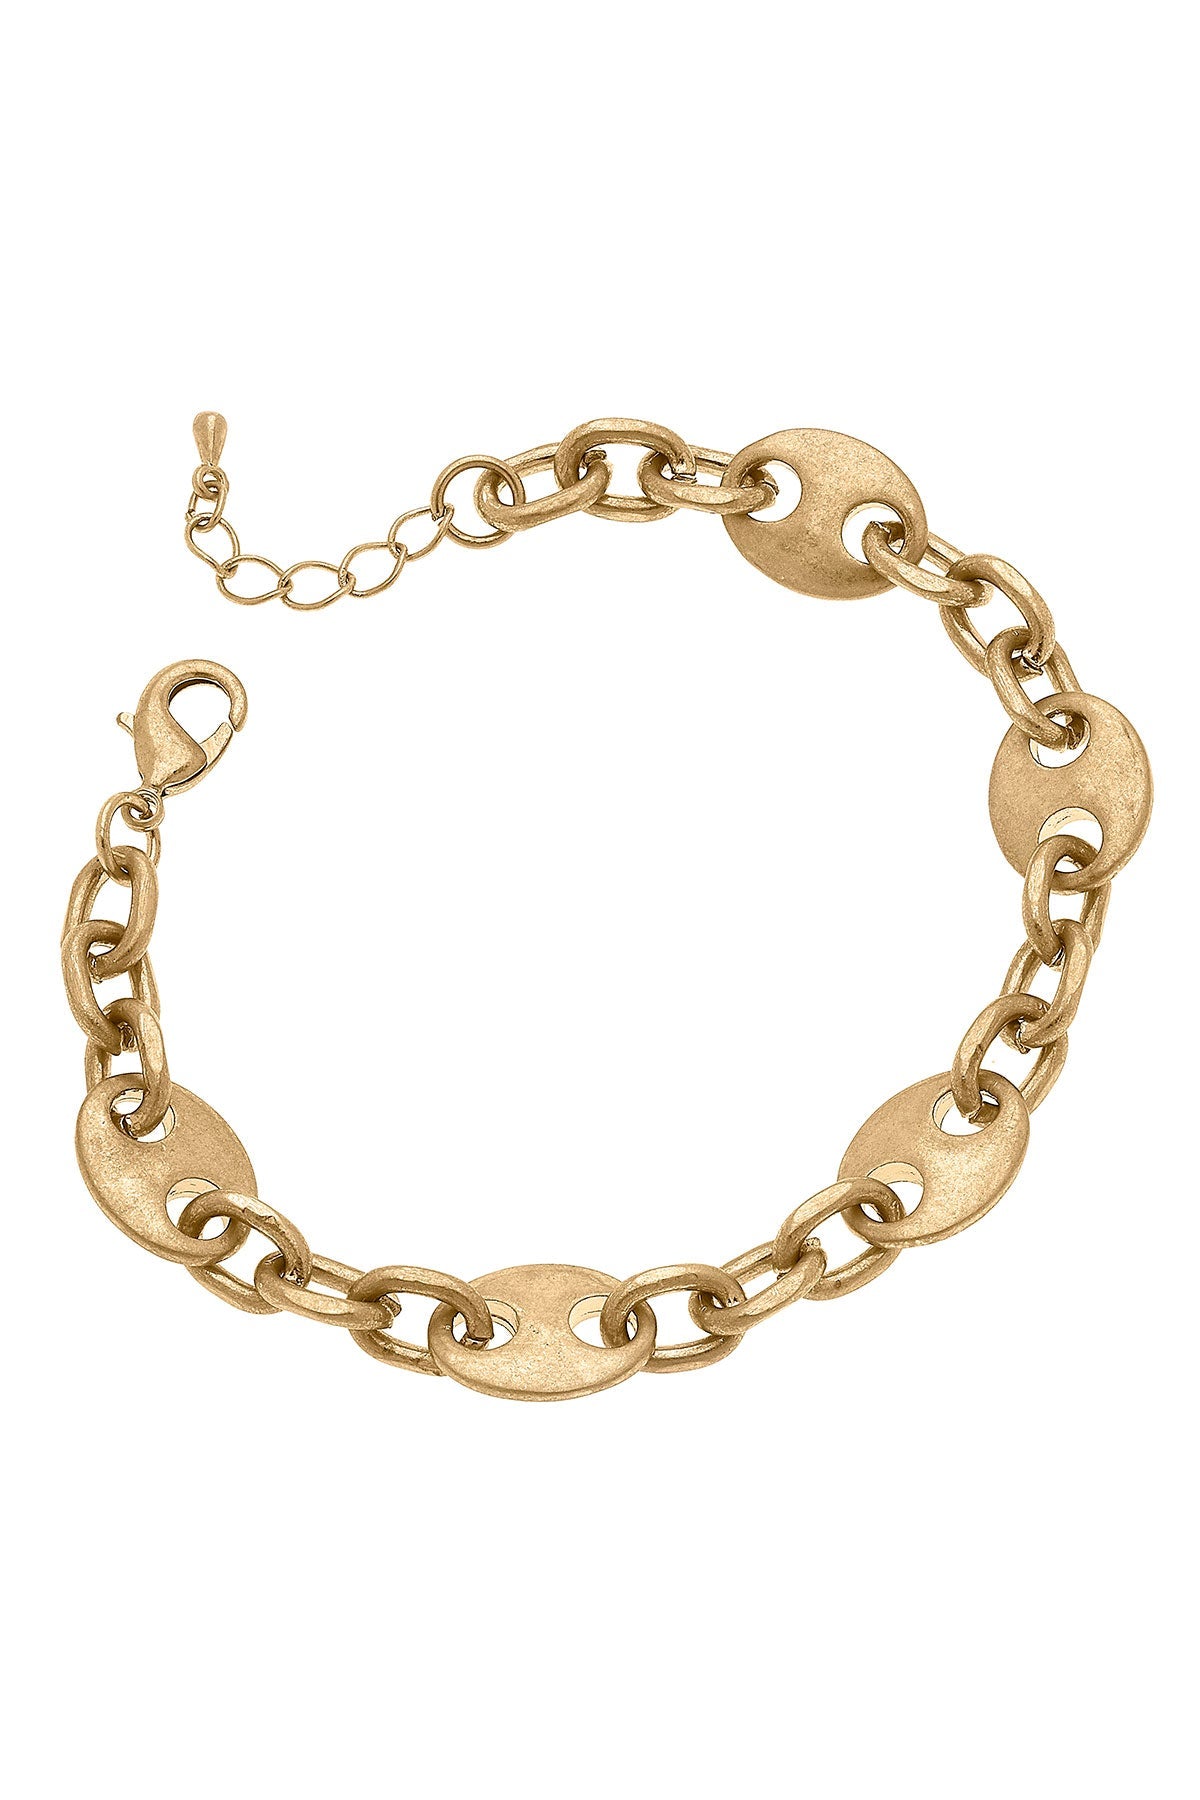 Blaire Mariner Chain Bracelet in Worn Gold